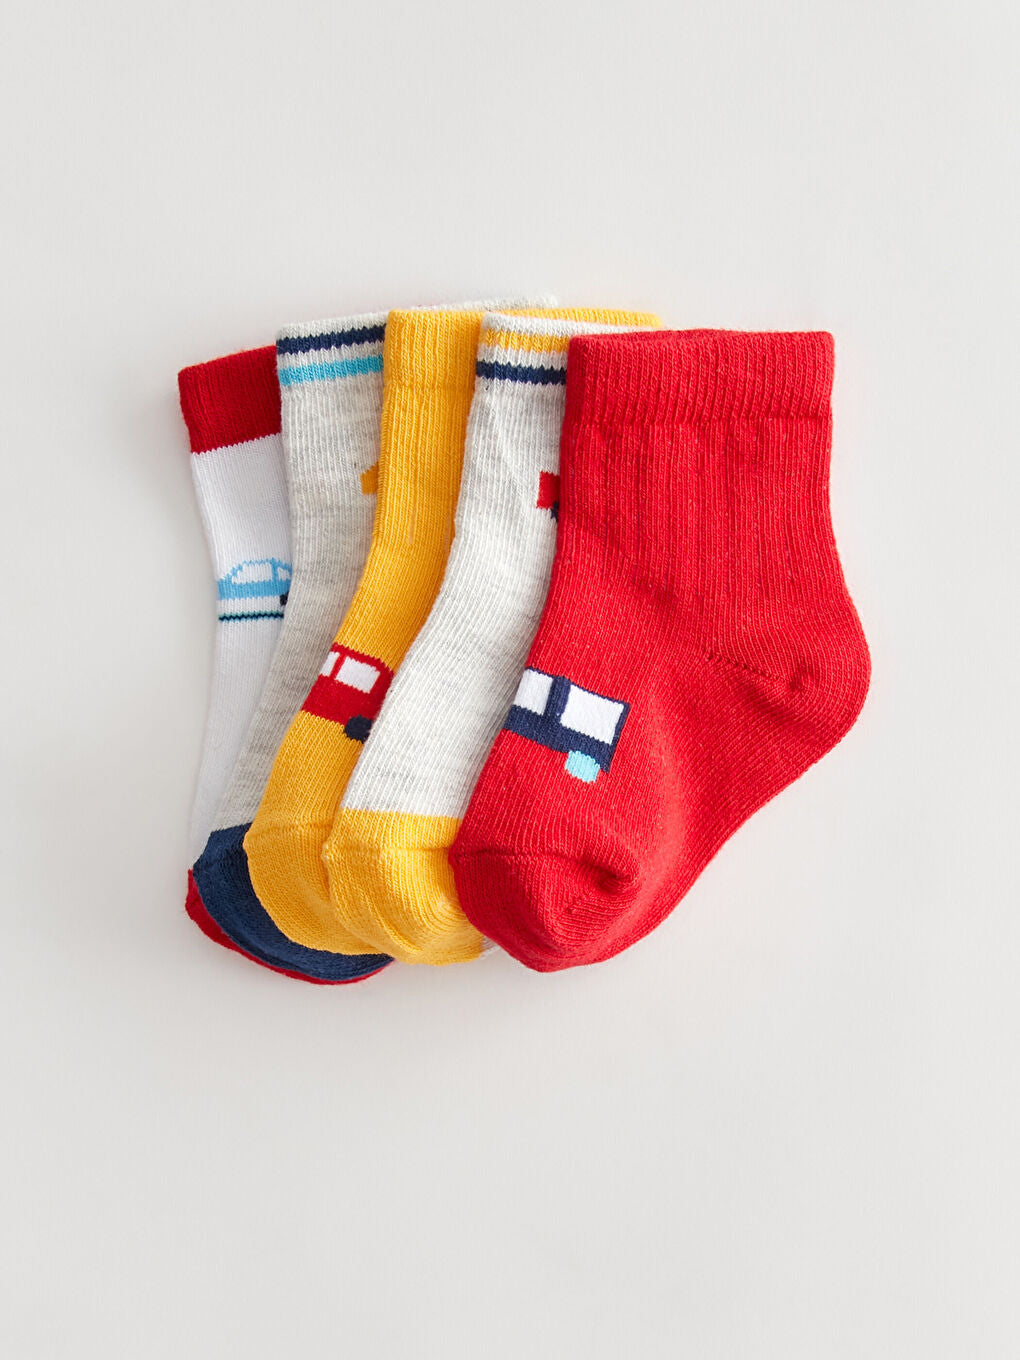 Printed Baby Boy Socks Set Of 5